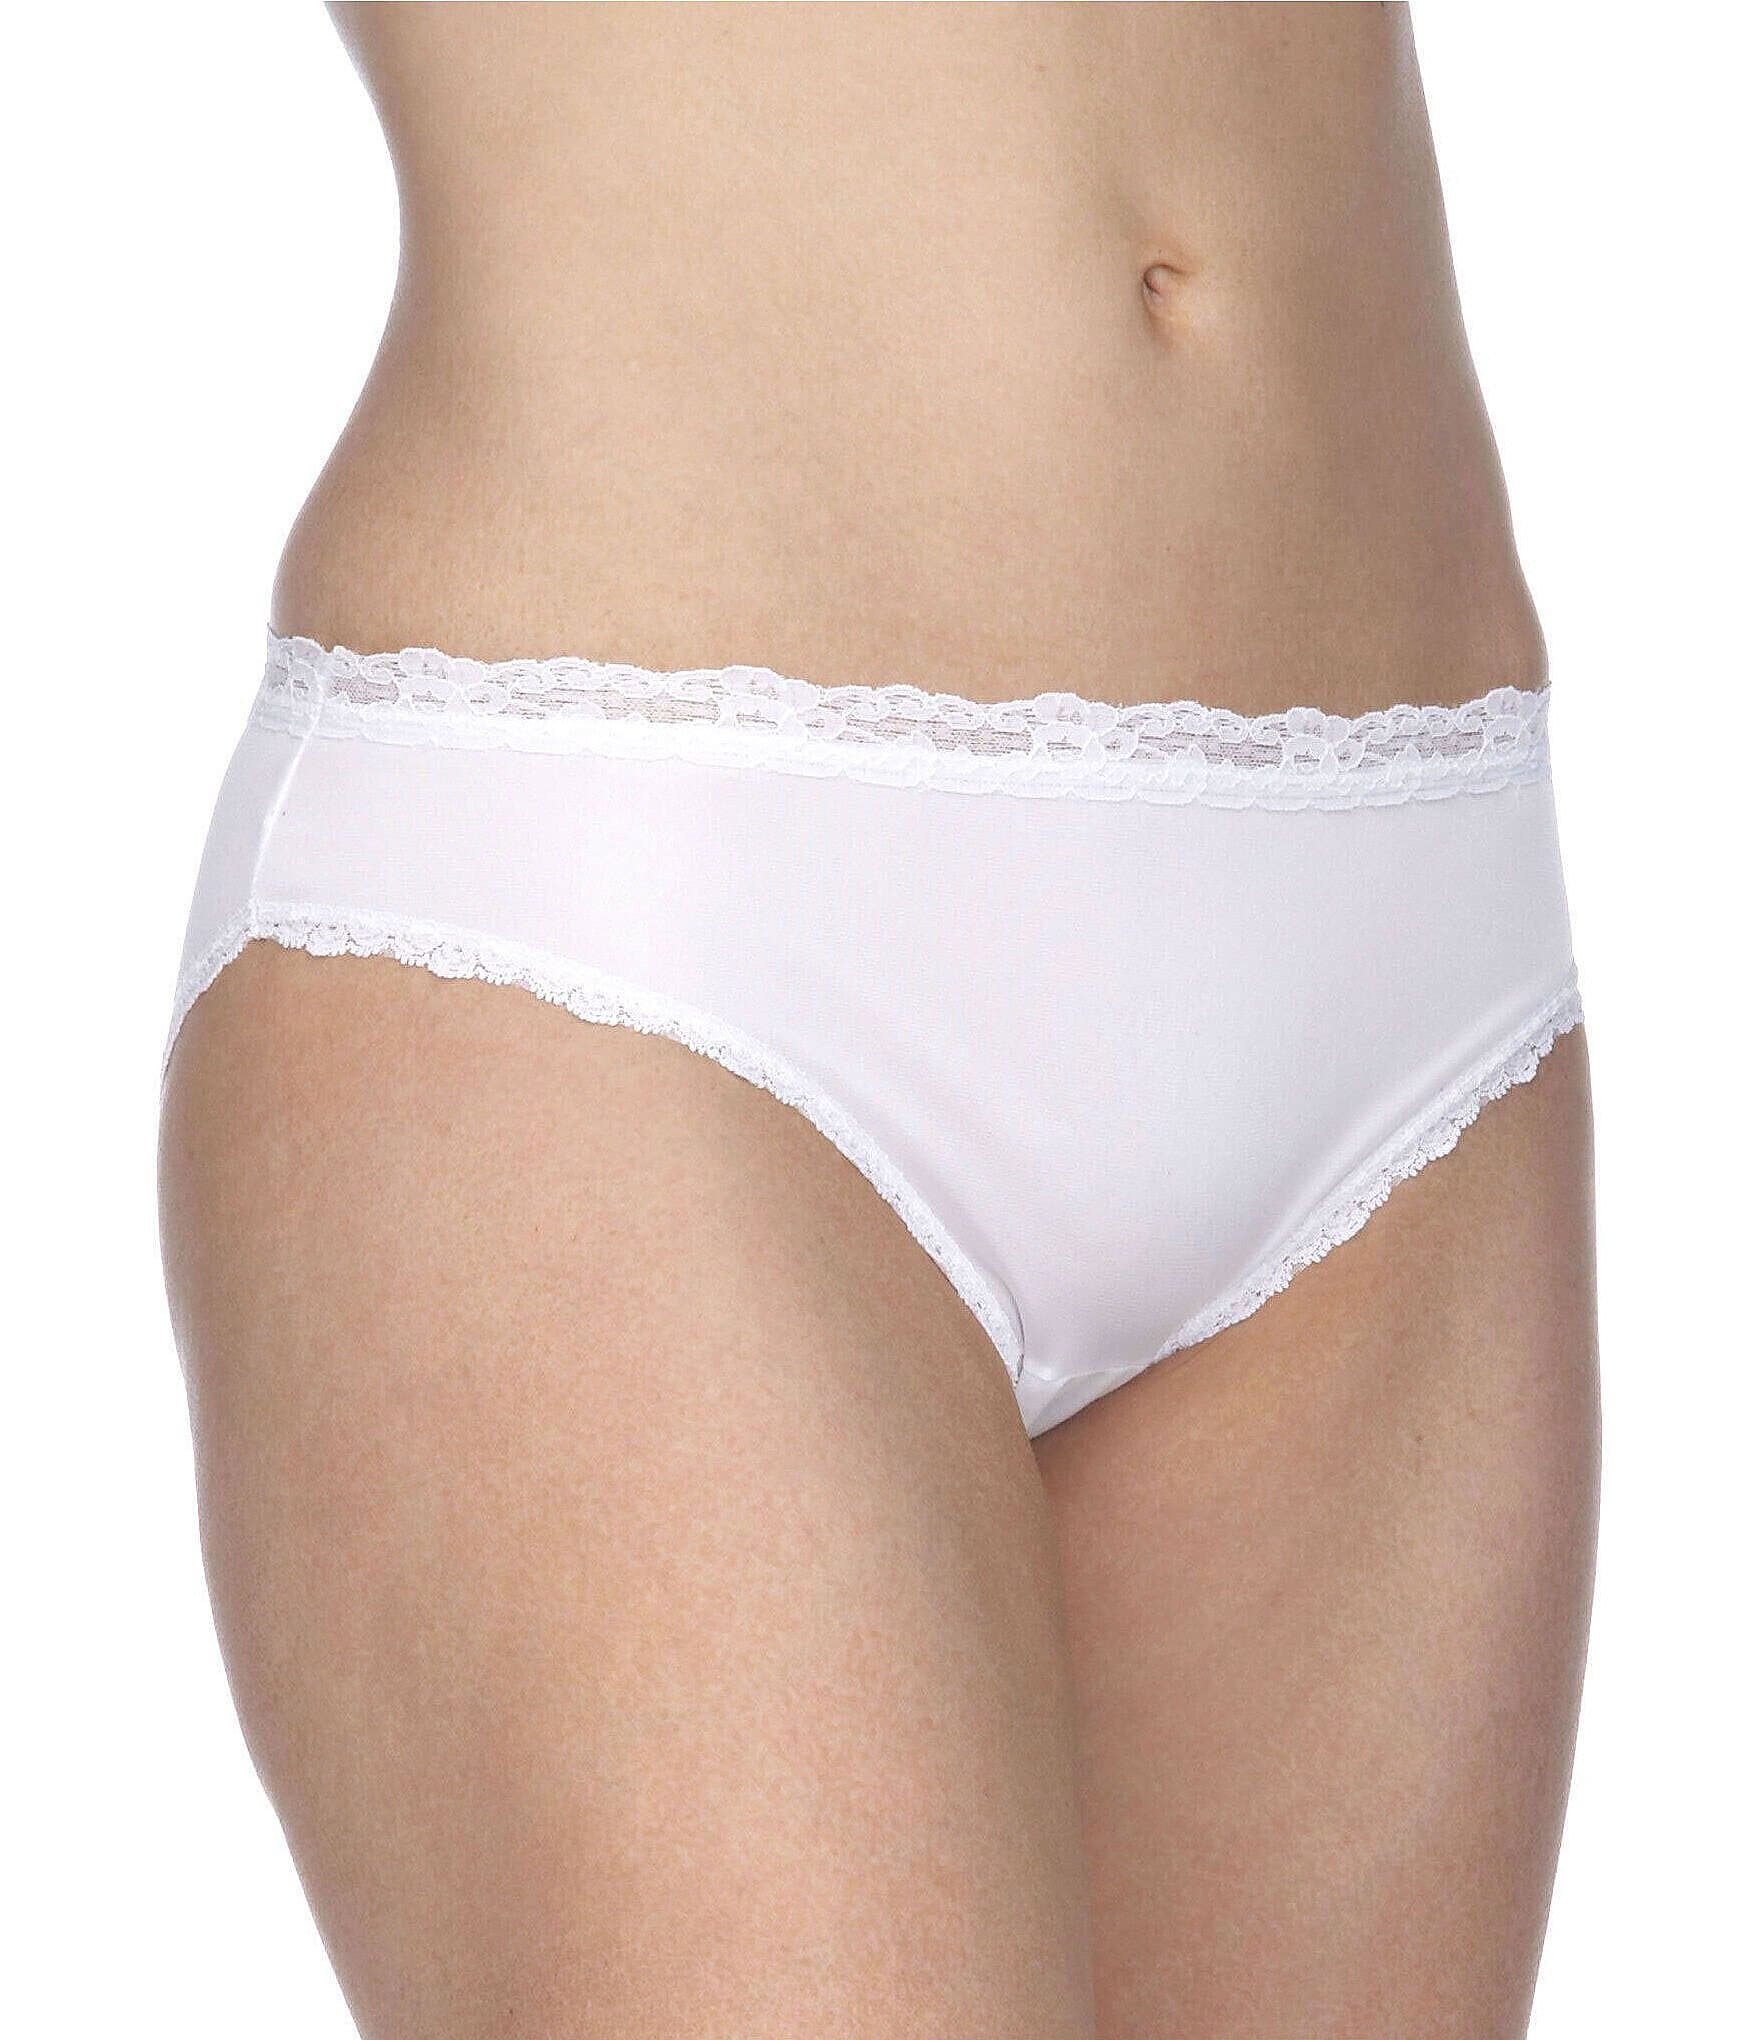 Women's Floral Lace White Nylon Bikini Panty